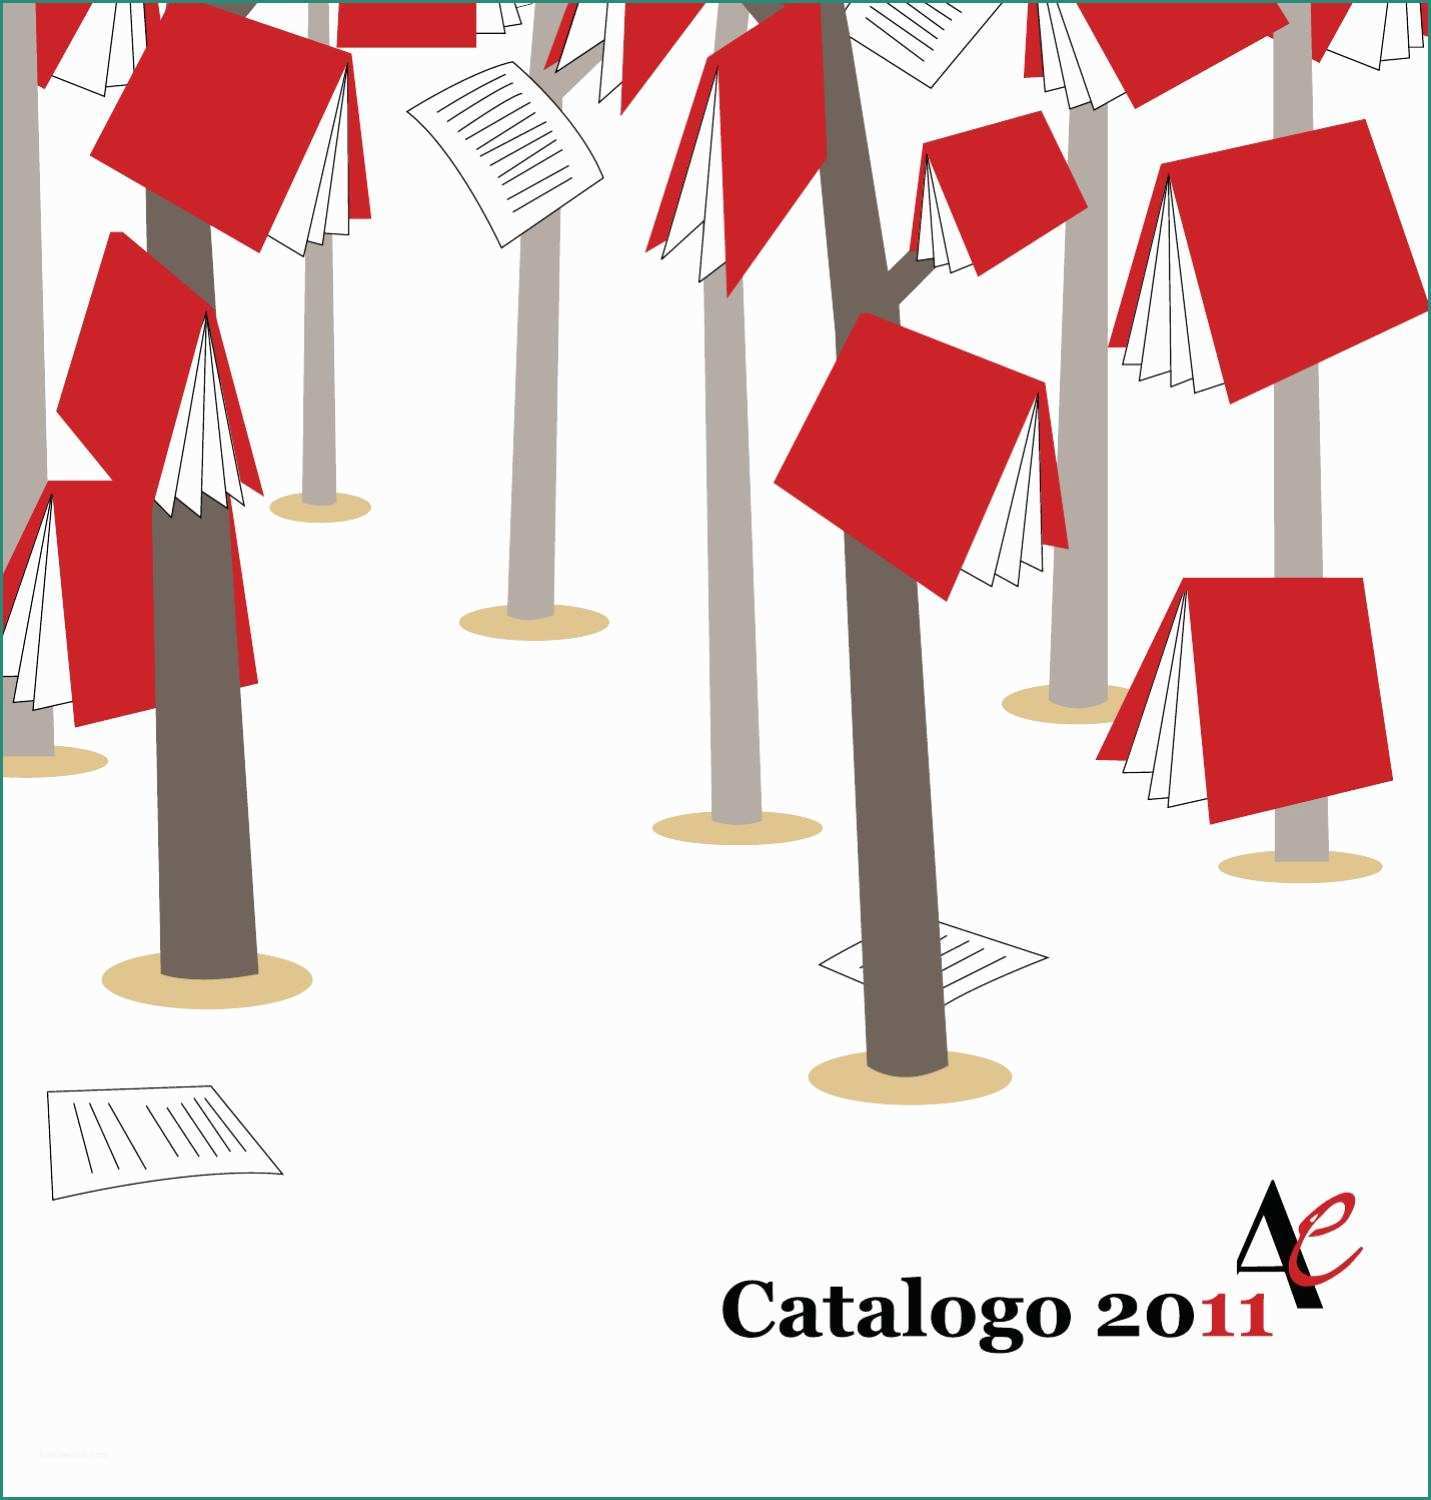 Il Salotto Reggio Emilia E Catalogo 2011 Aliberti by Aliberti Editore issuu